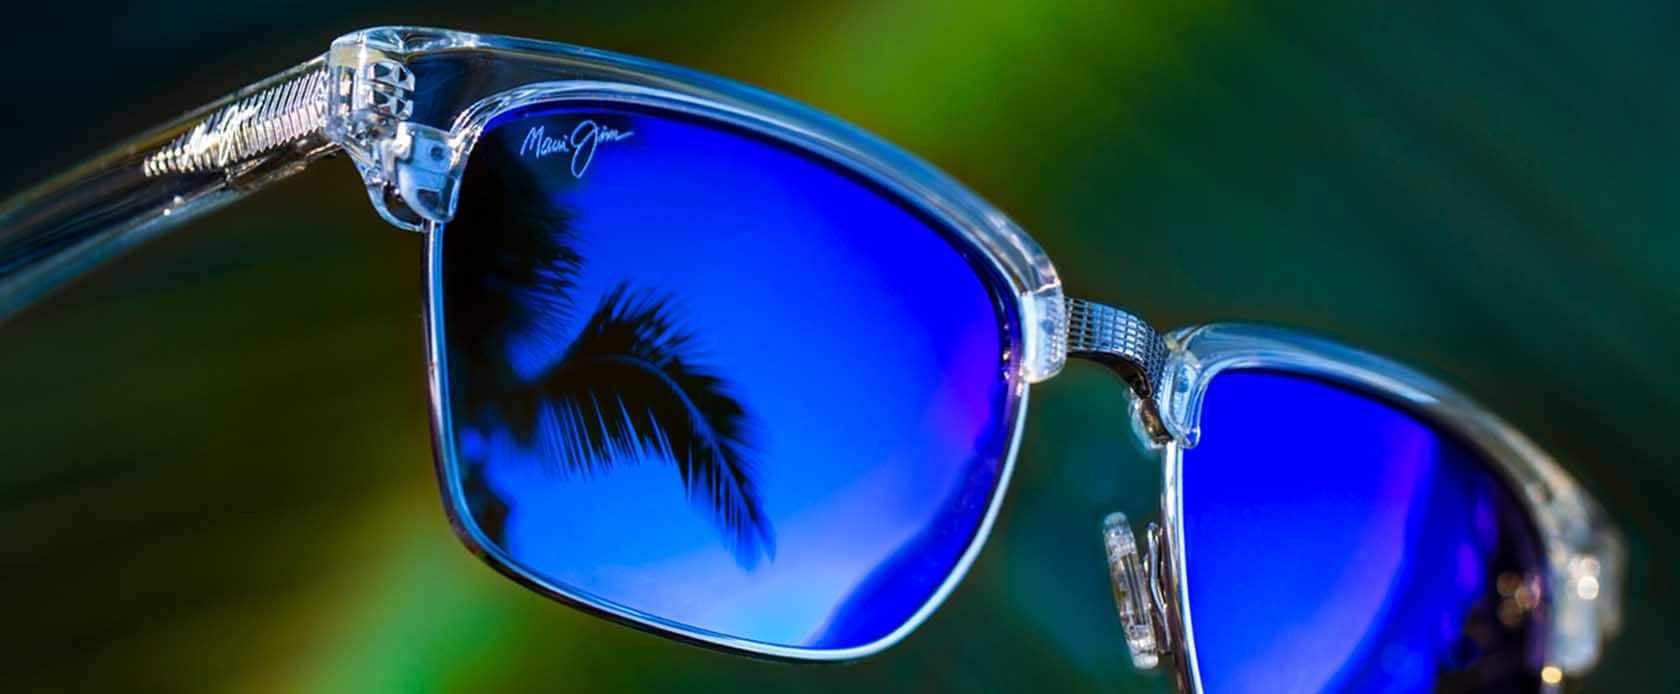 gafas de sol de montura transparente con lentes azules con el cielo reflejado